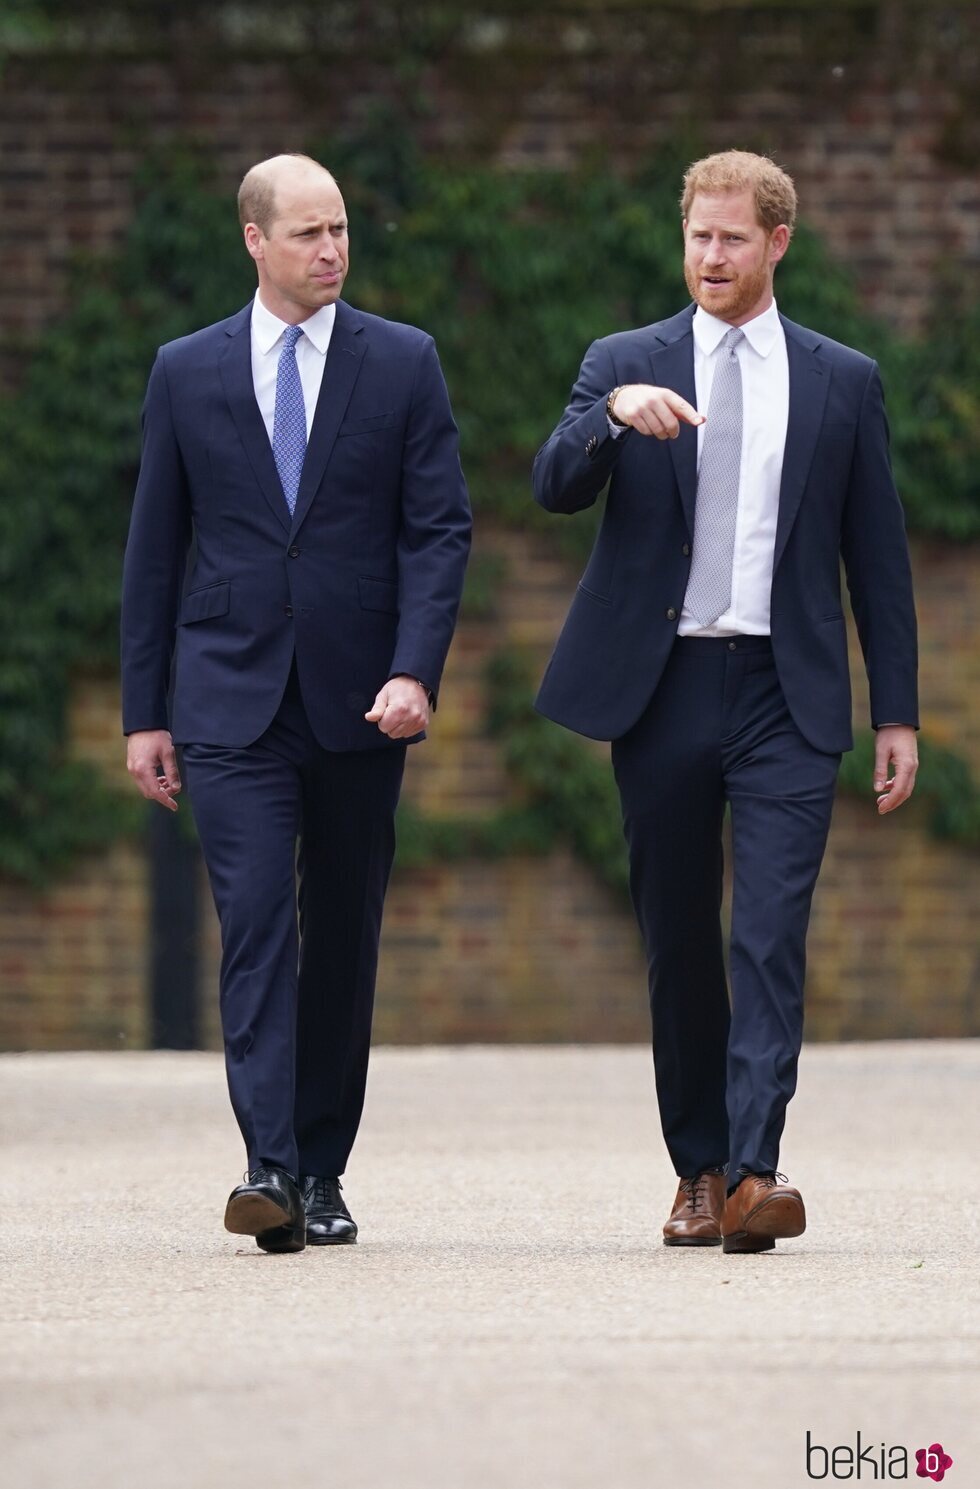 El Príncipe Guillermo y el Príncipe Harry durante la inauguración de la estatua de Lady Di en Kensington Palace